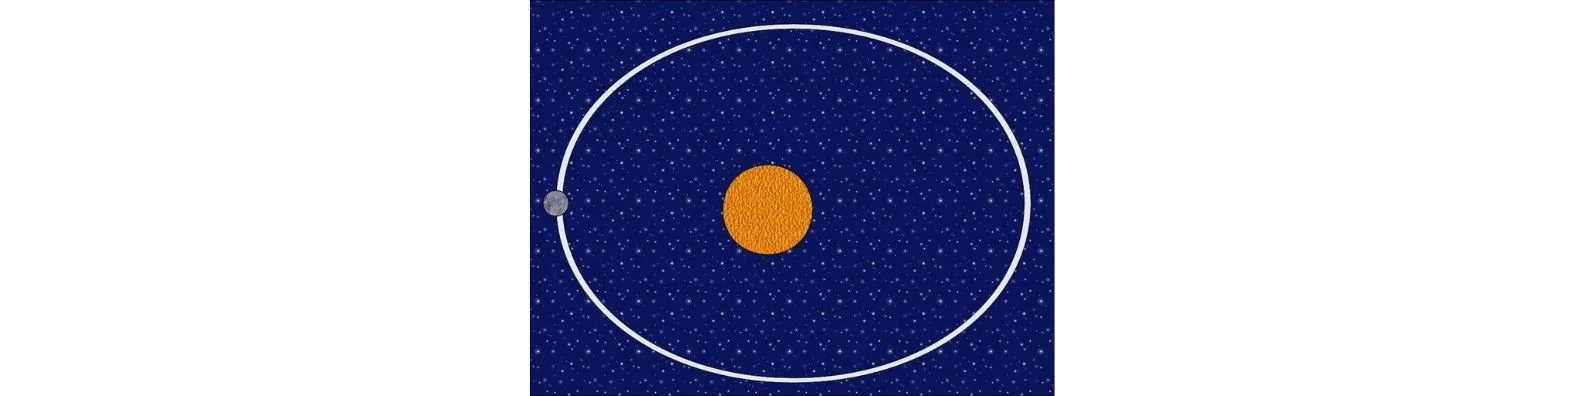 Ilustrasi lintasan orbit planet berbentuk oval, orientasi foto diubah menjadi landscape (Foto: https://creativecommons.org/licenses/by-sa/3.0 by Moneya)